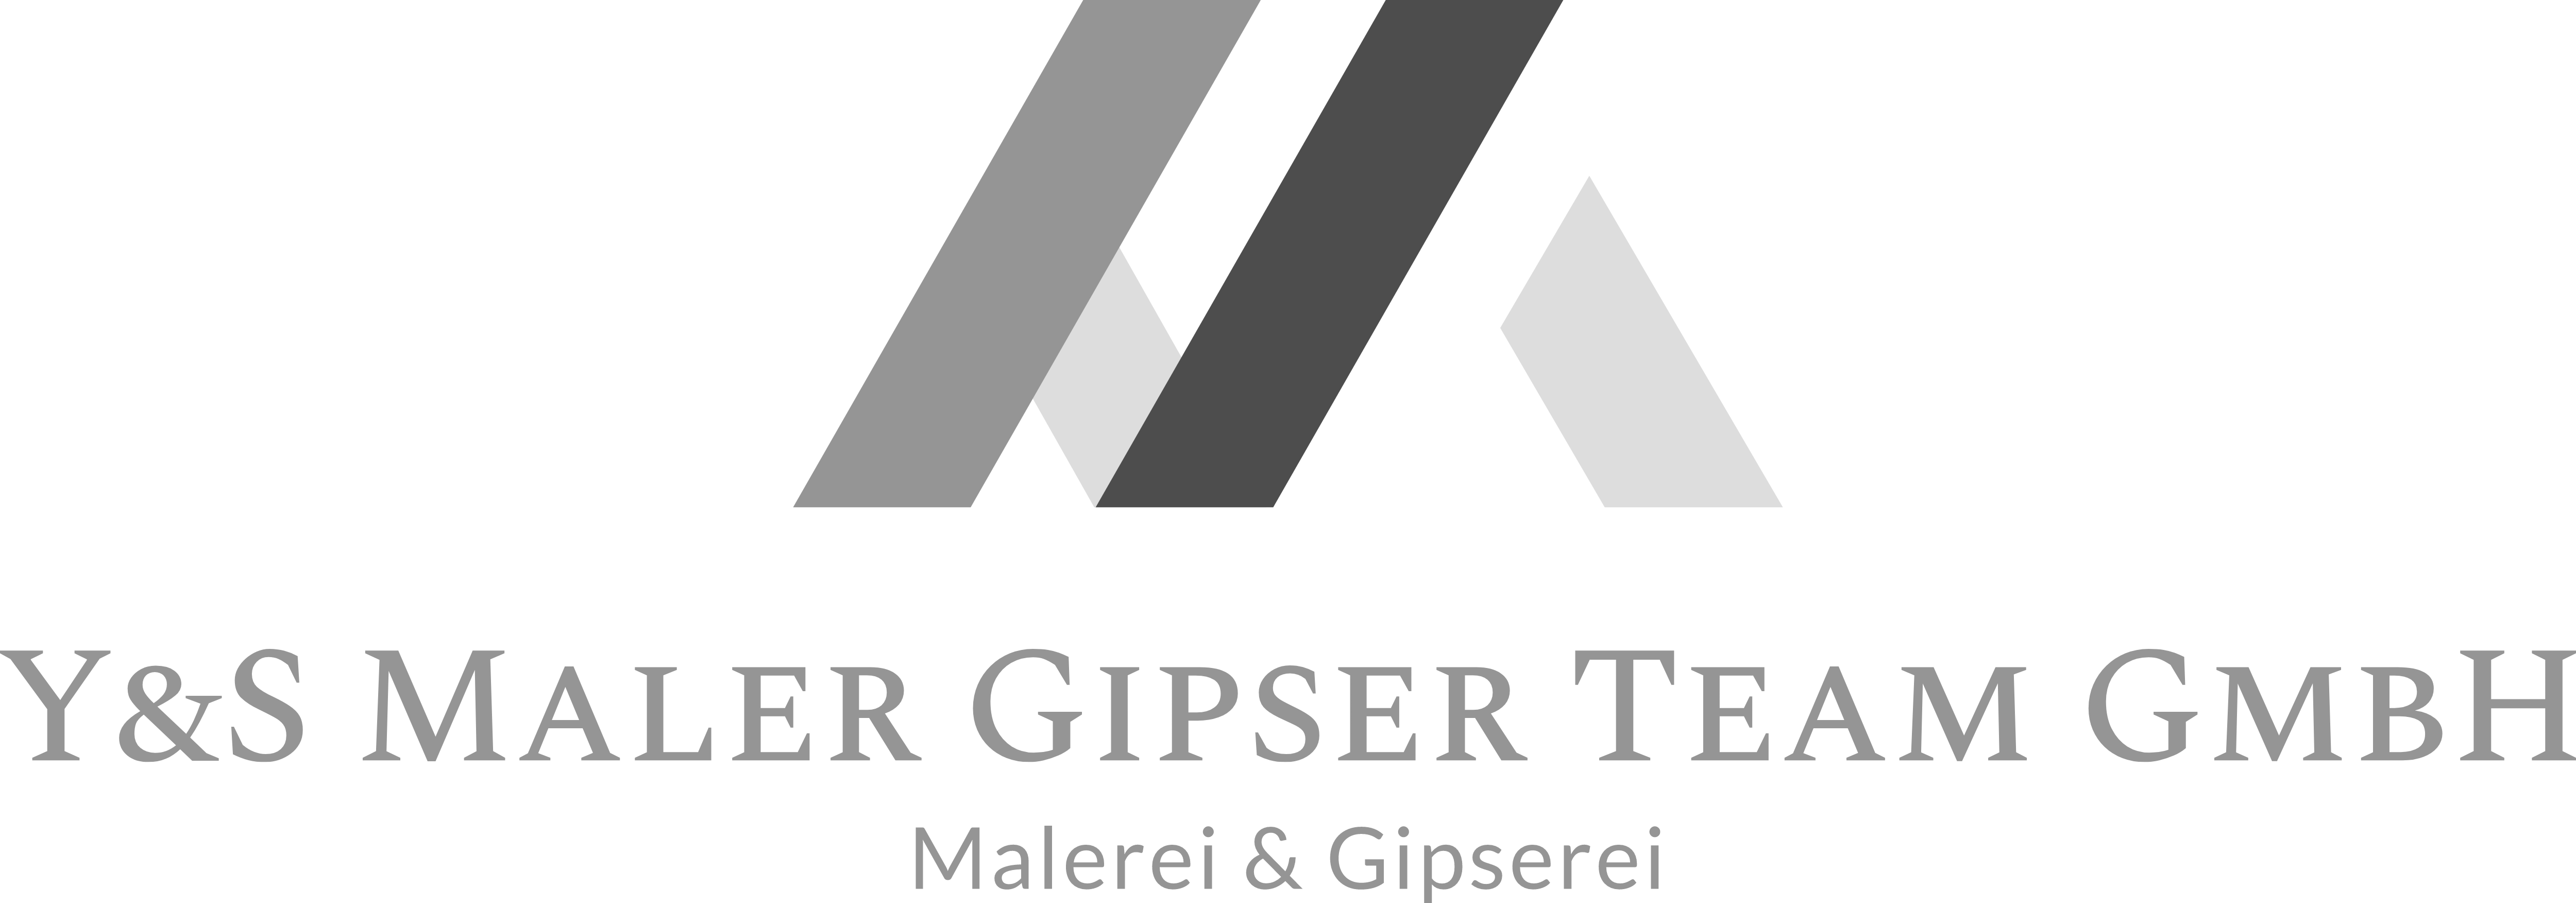 Y&S Maler Gipser Team GmbH